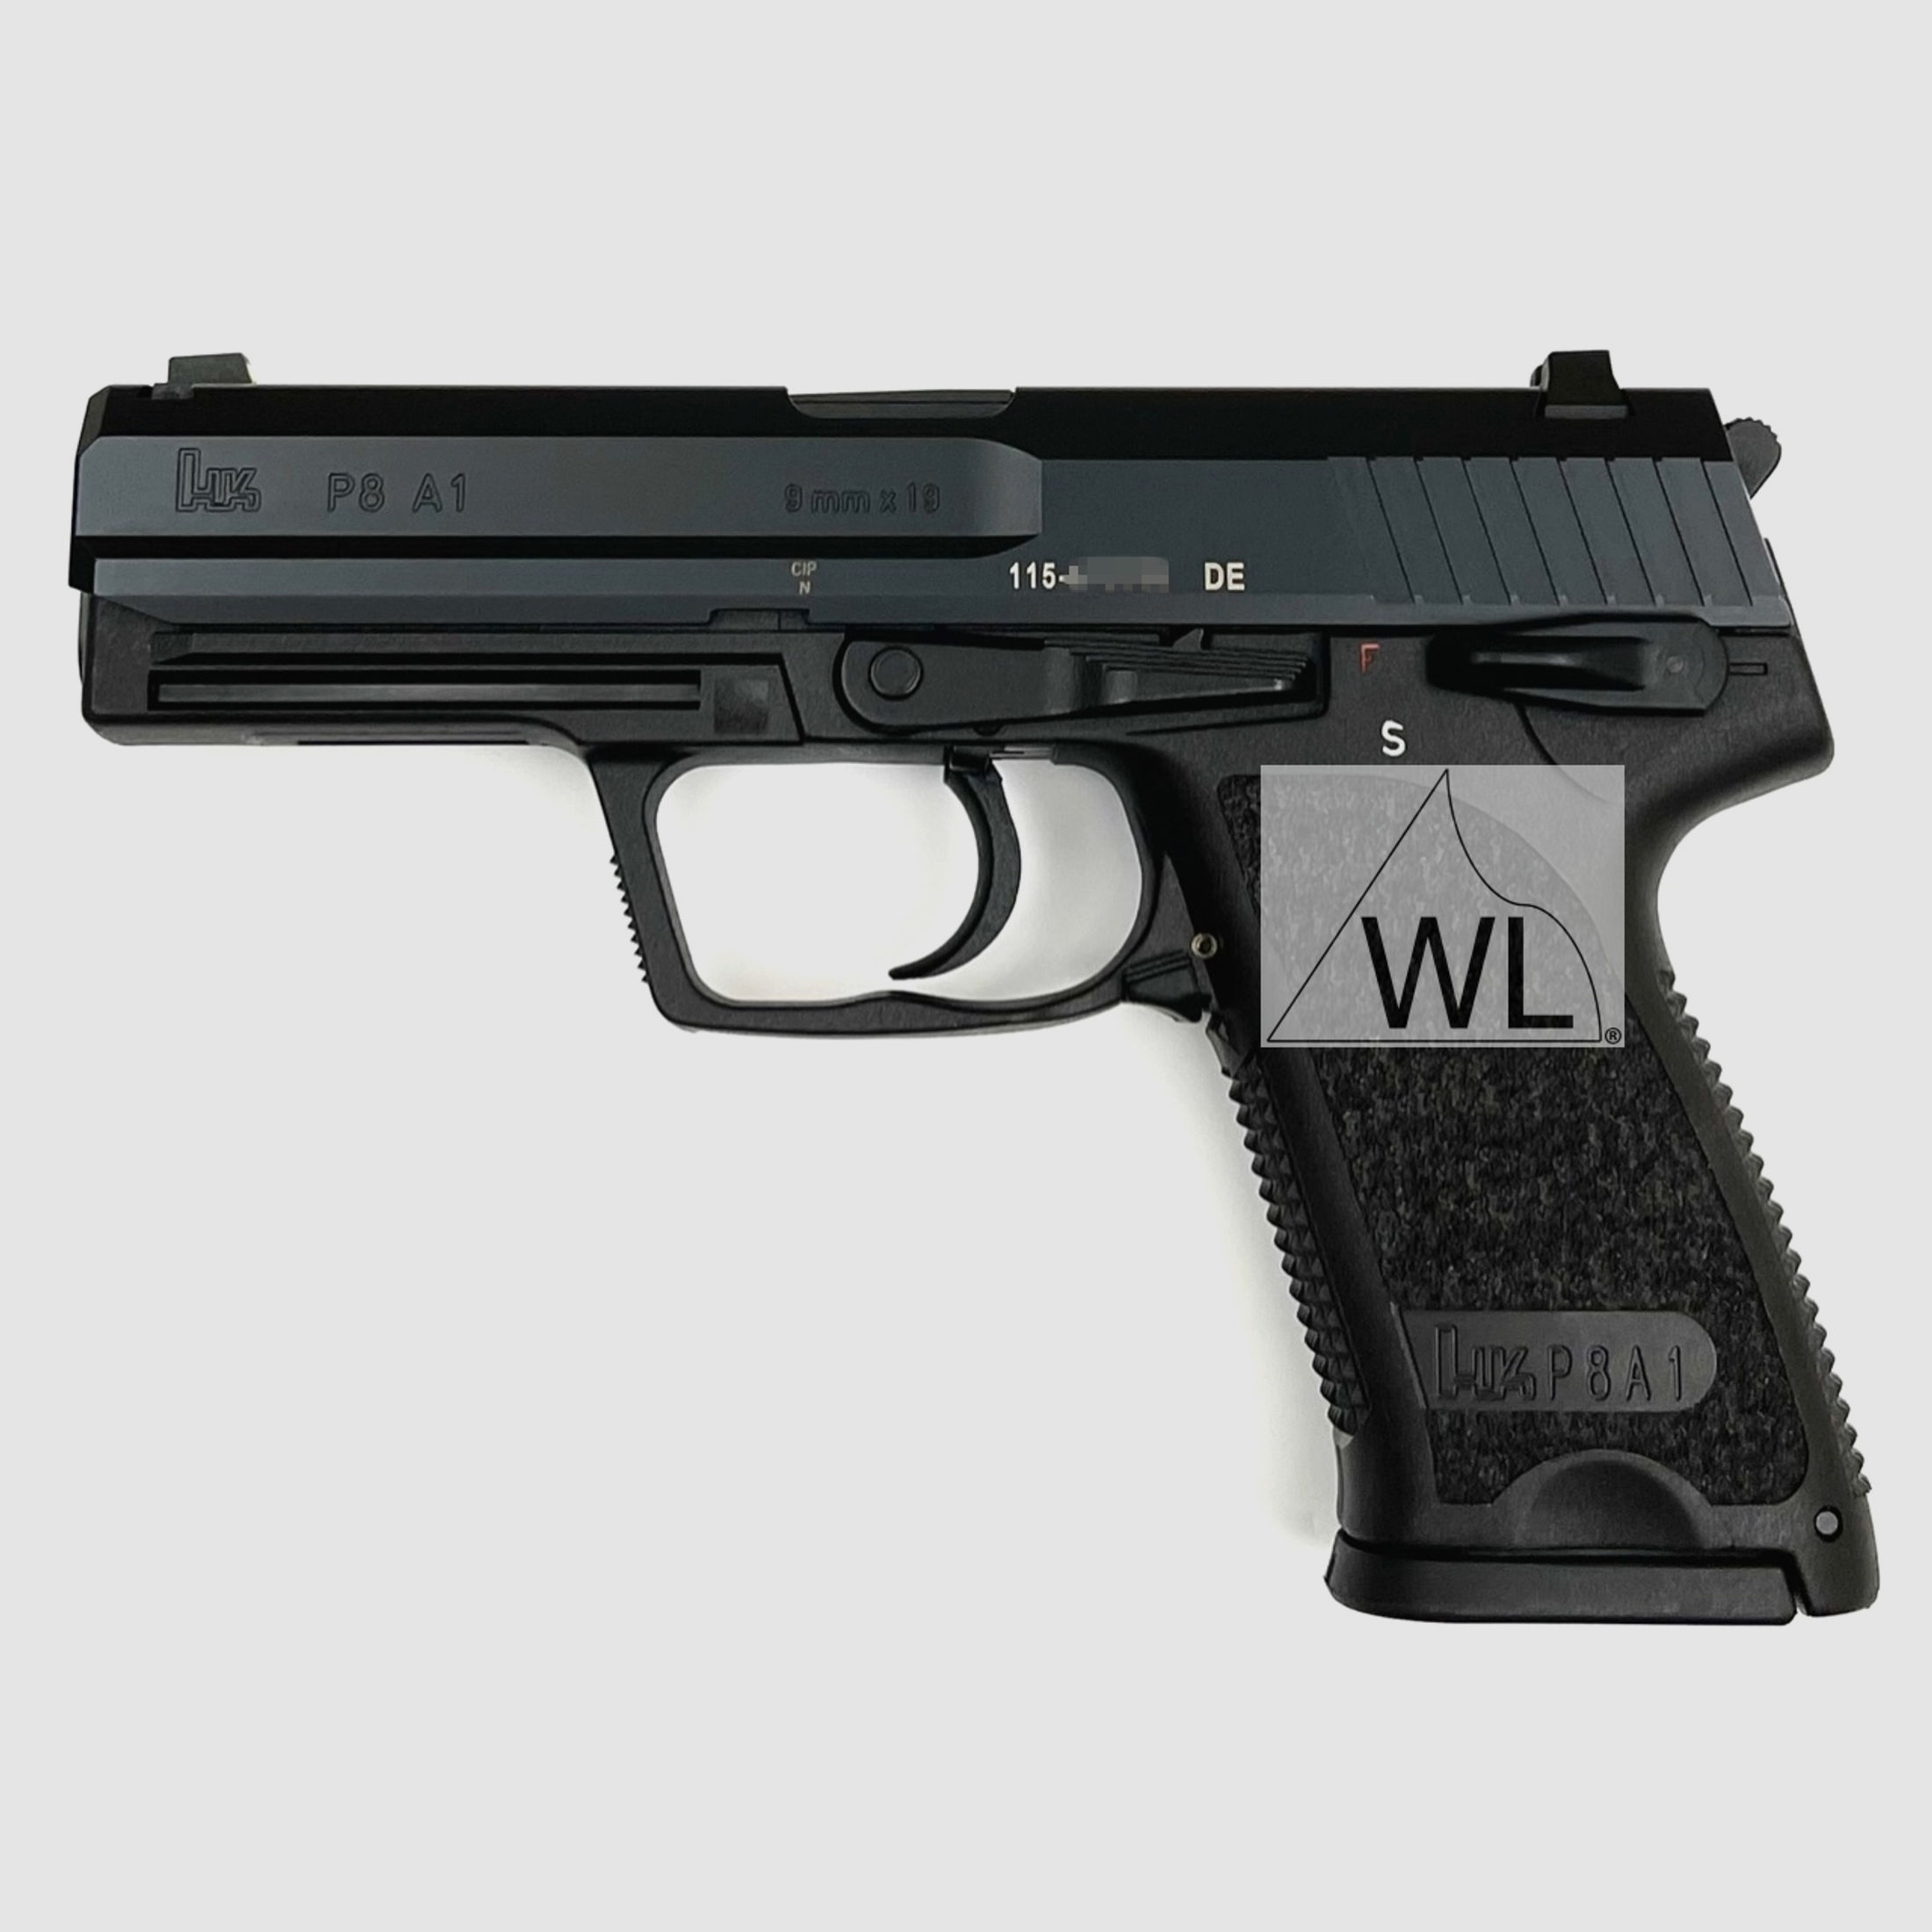 Heckler & Koch P8 A1, Kal. 9mm Luger